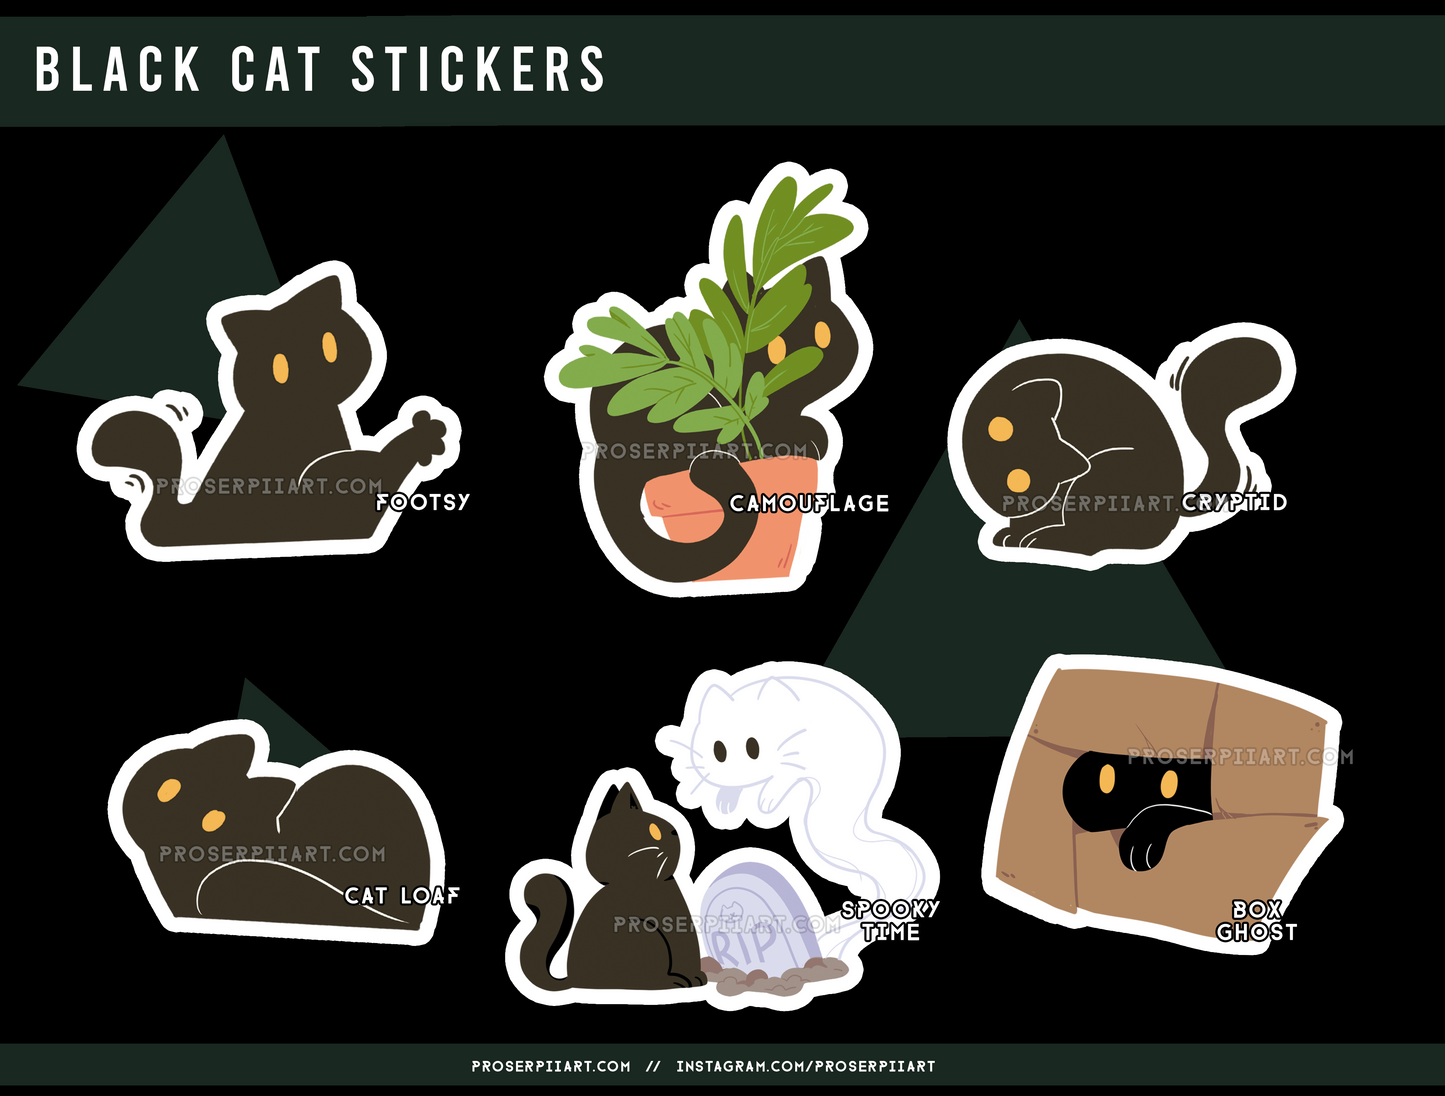 Tiamat the Black Cat Stickers!